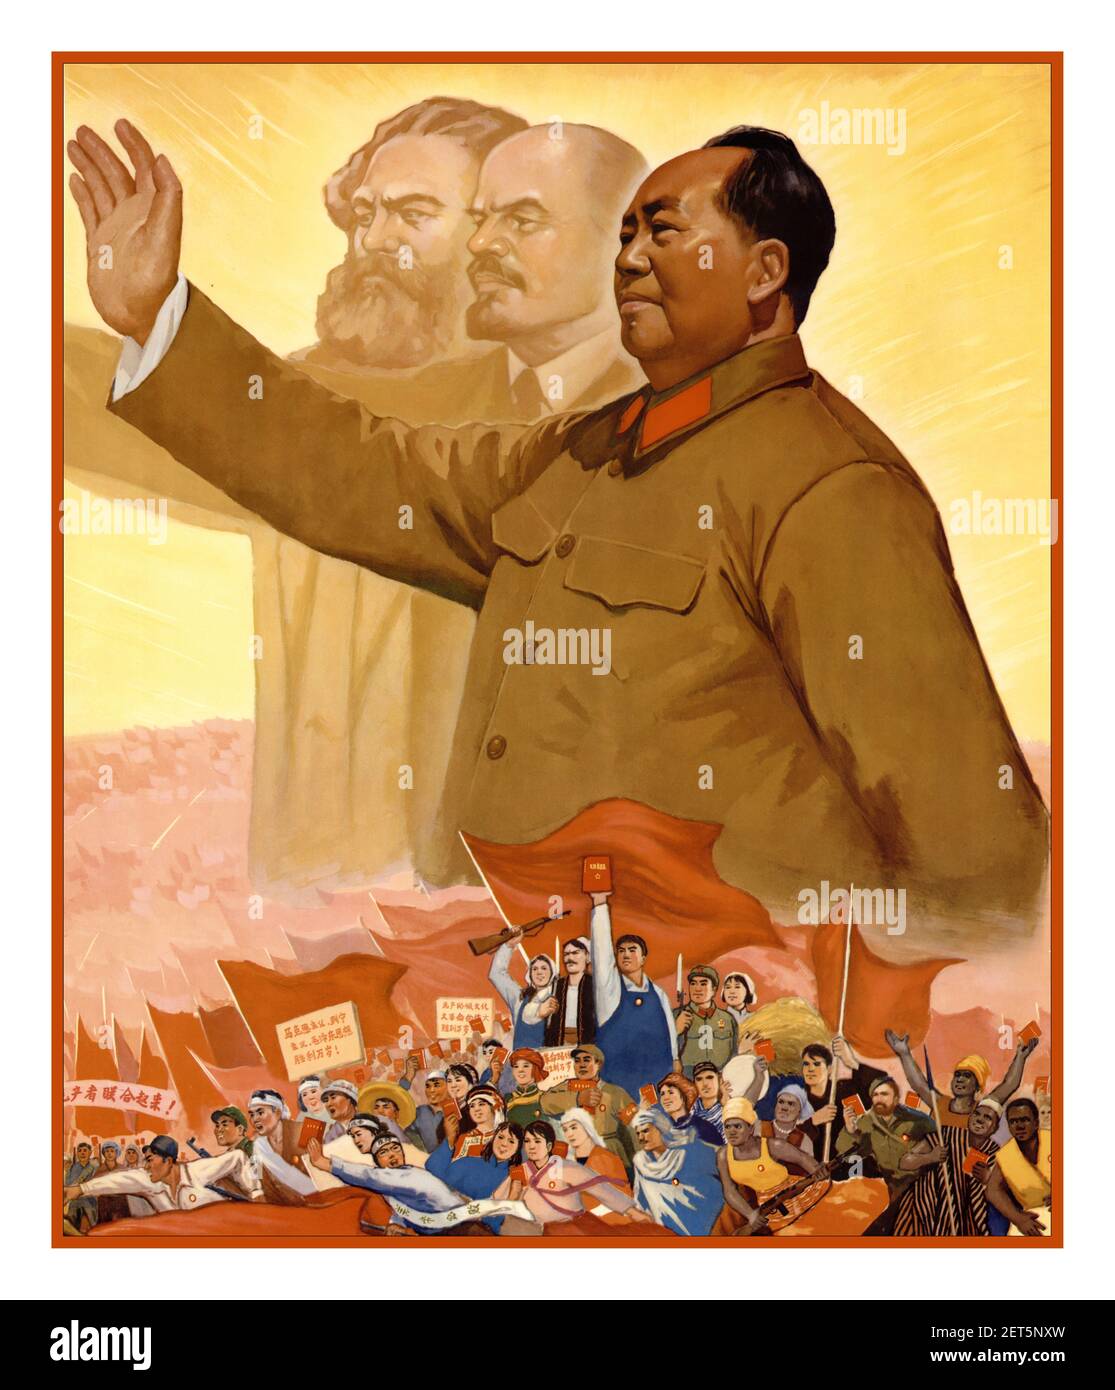 Vorsitzender Mao Vintage Kommunistisches Plakat mit Karl Marx & Vladimir Lenin im Hintergrund mit dem Vorsitzenden Mao Zedong Vintage chinesische Propaganda Plakat Kulturrevolution der 1960er Jahre vom Vorsitzenden Mao China Stockfoto